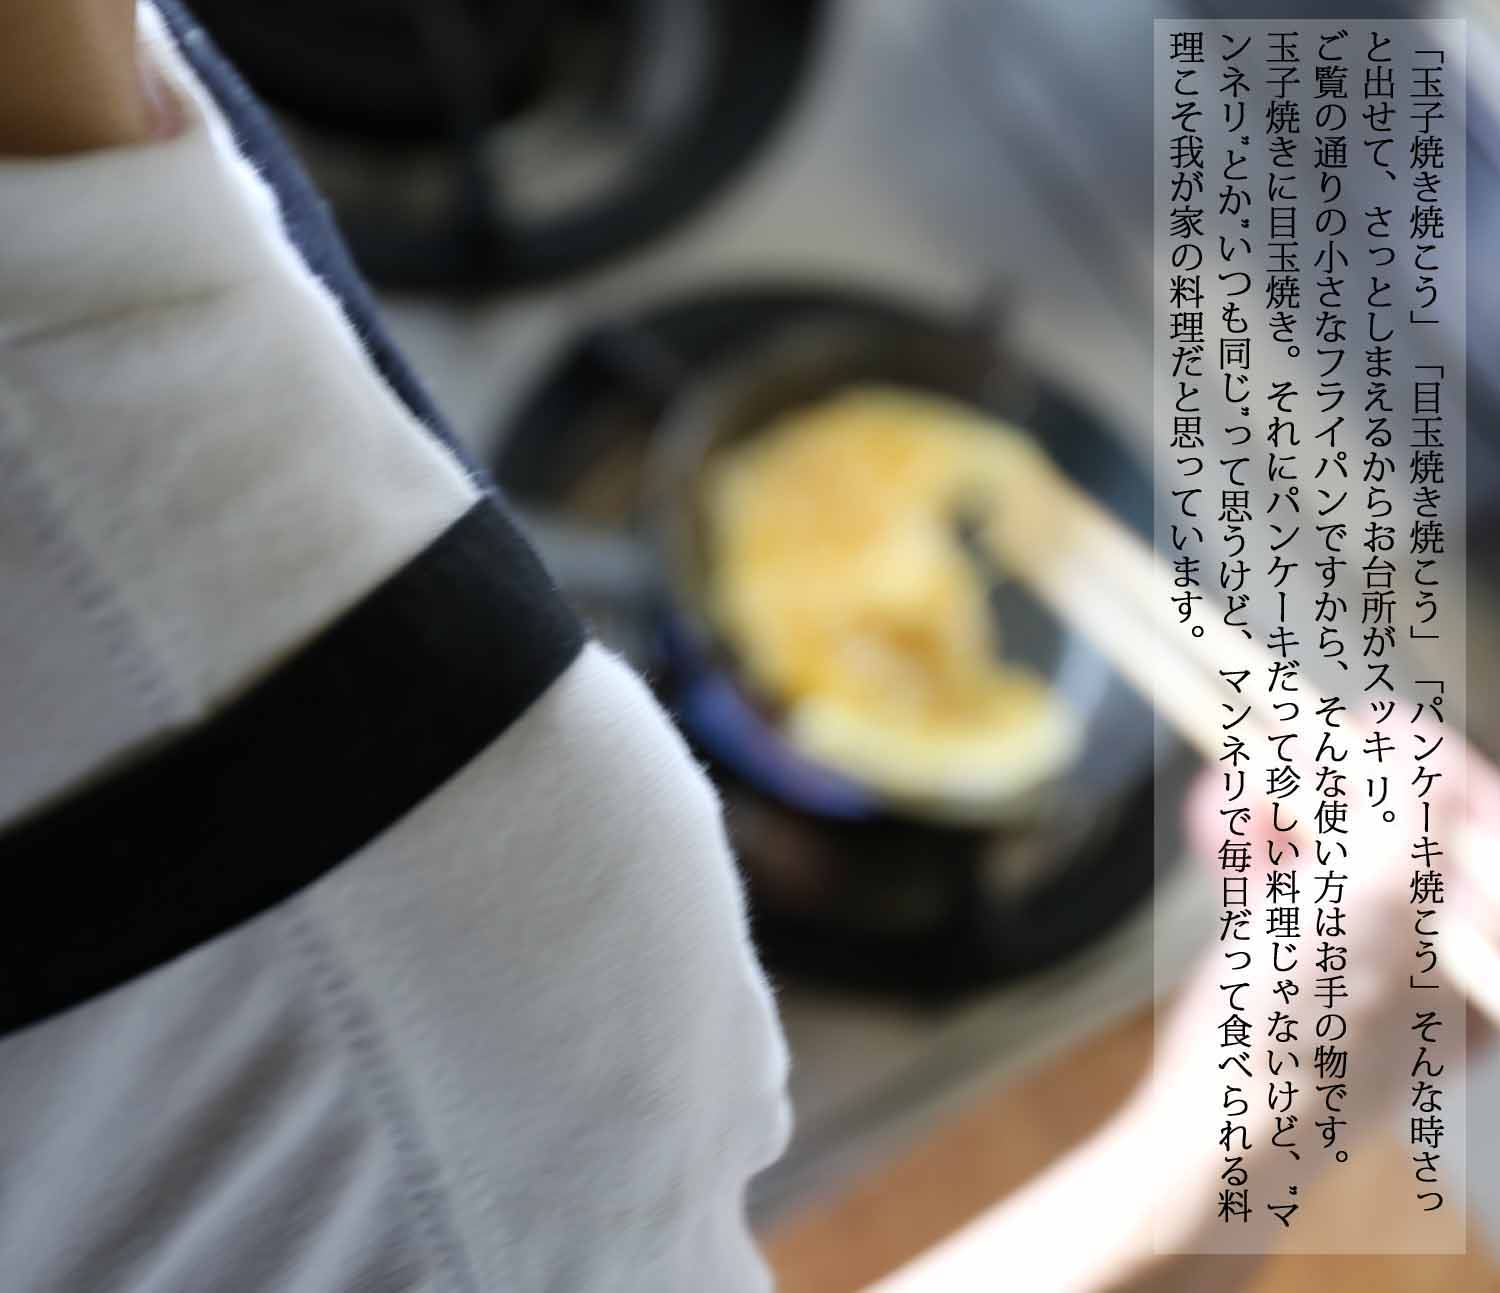 小さなフライパンの調理風景です。朝のお弁当作りに便利です。